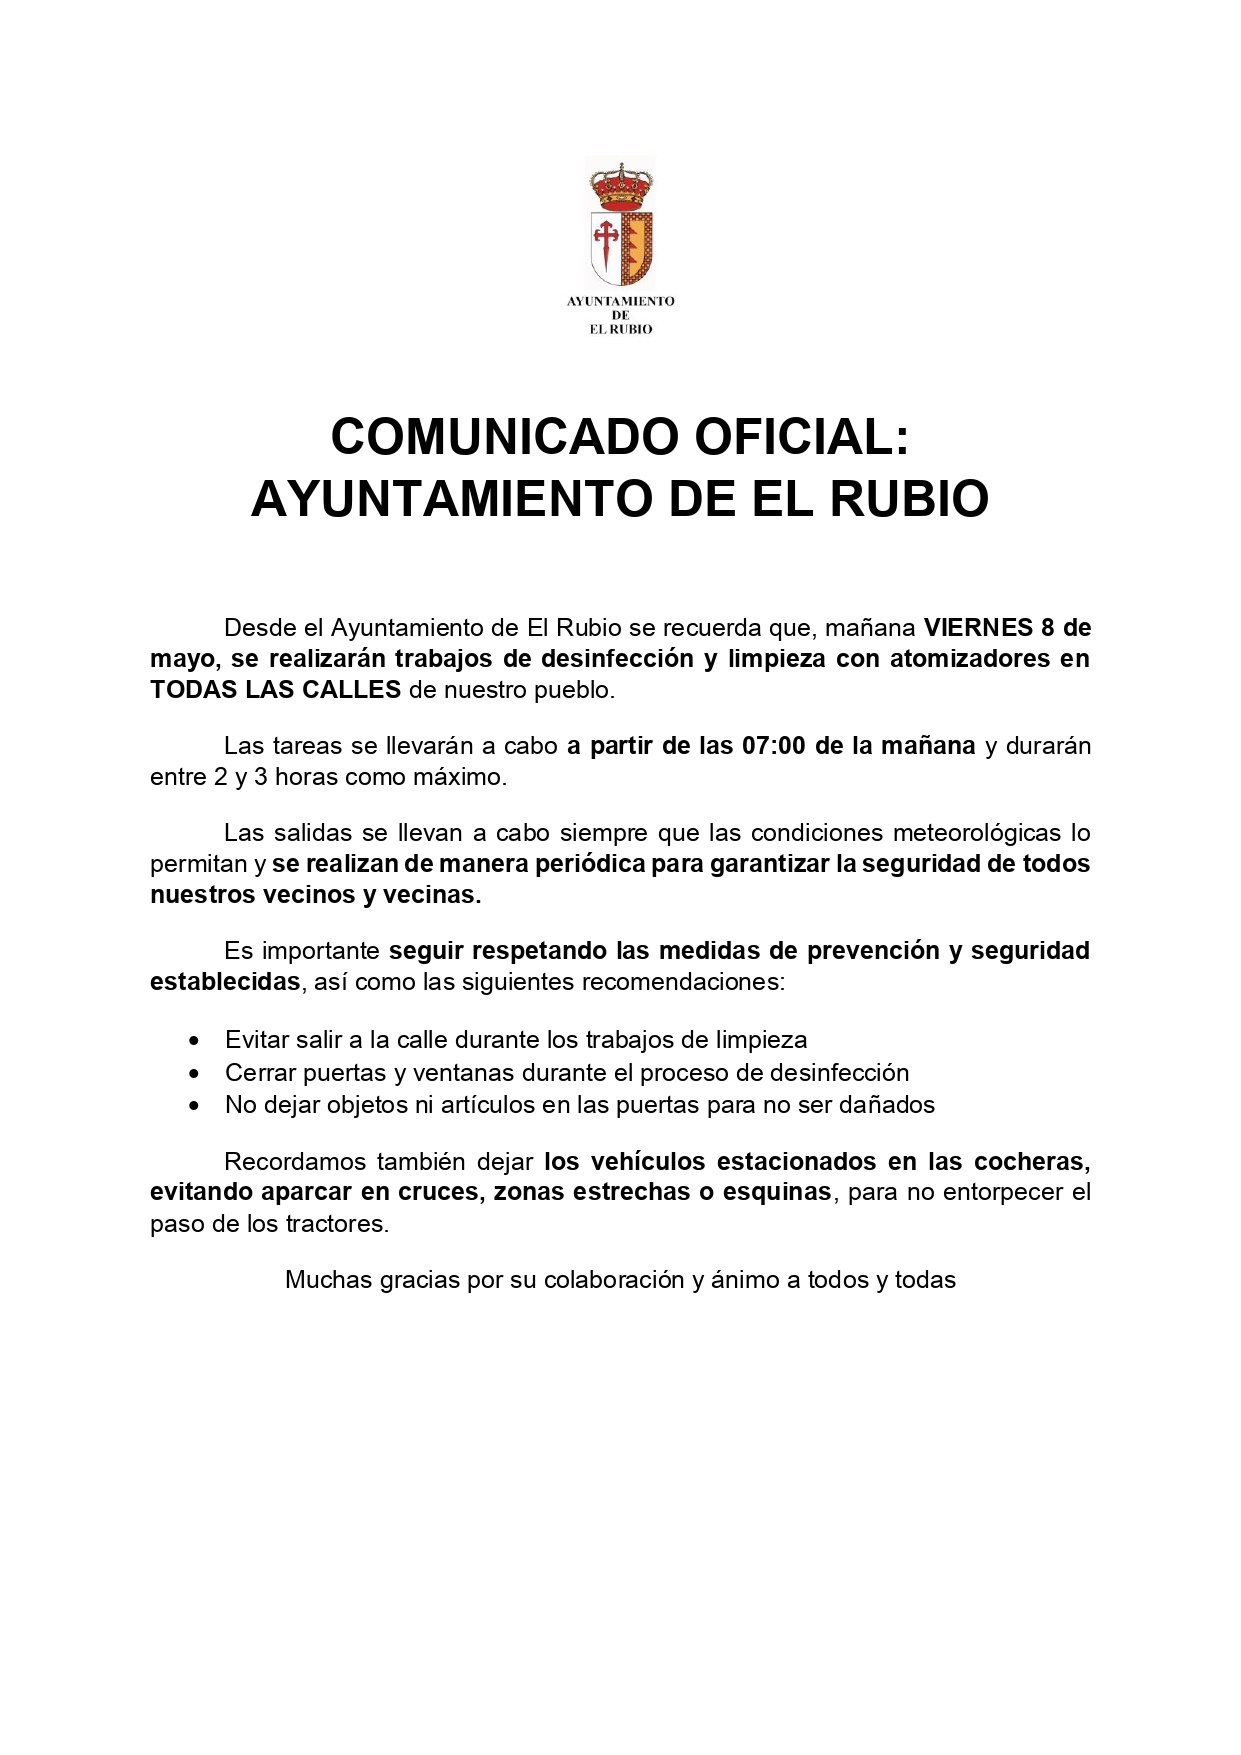 38.-AYTO. EL RUBIO DESINFECCION DESESCALADA 7-5-20_page-0001